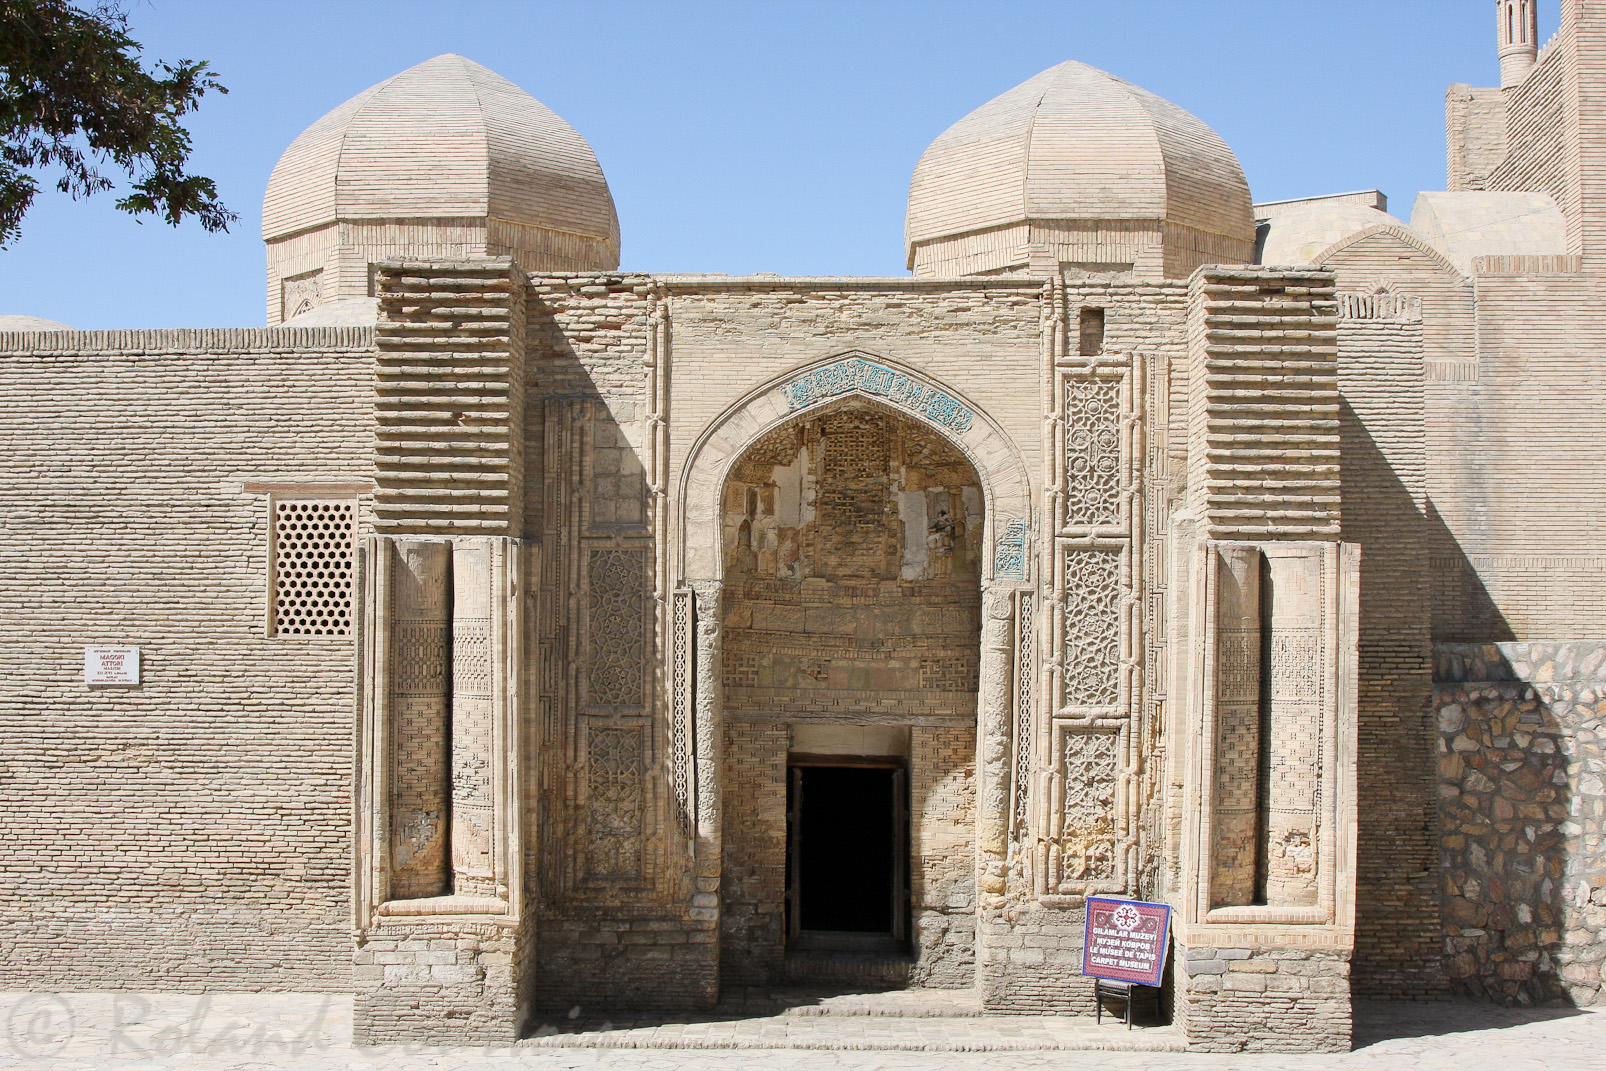 Mosquée Magok-i-Attari, sur la façade, toute une gamme de techniques décorarives : briques polies, carreaux en terre cuite et mosaique.